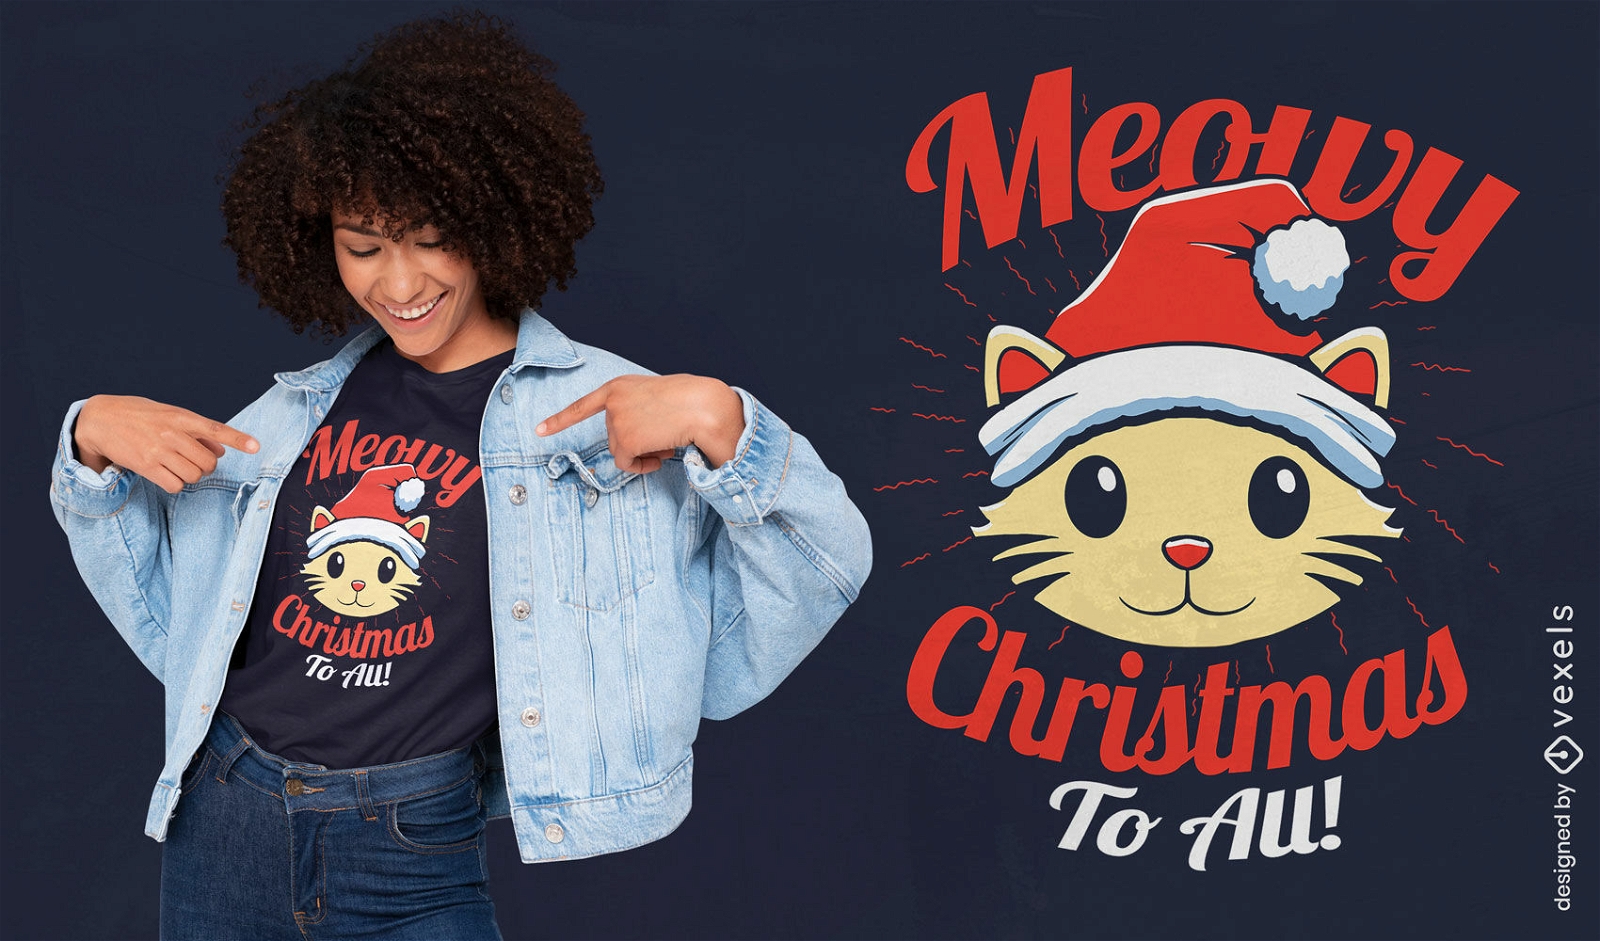 Lindo dise?o de camiseta de juego de palabras con gatos navide?os.